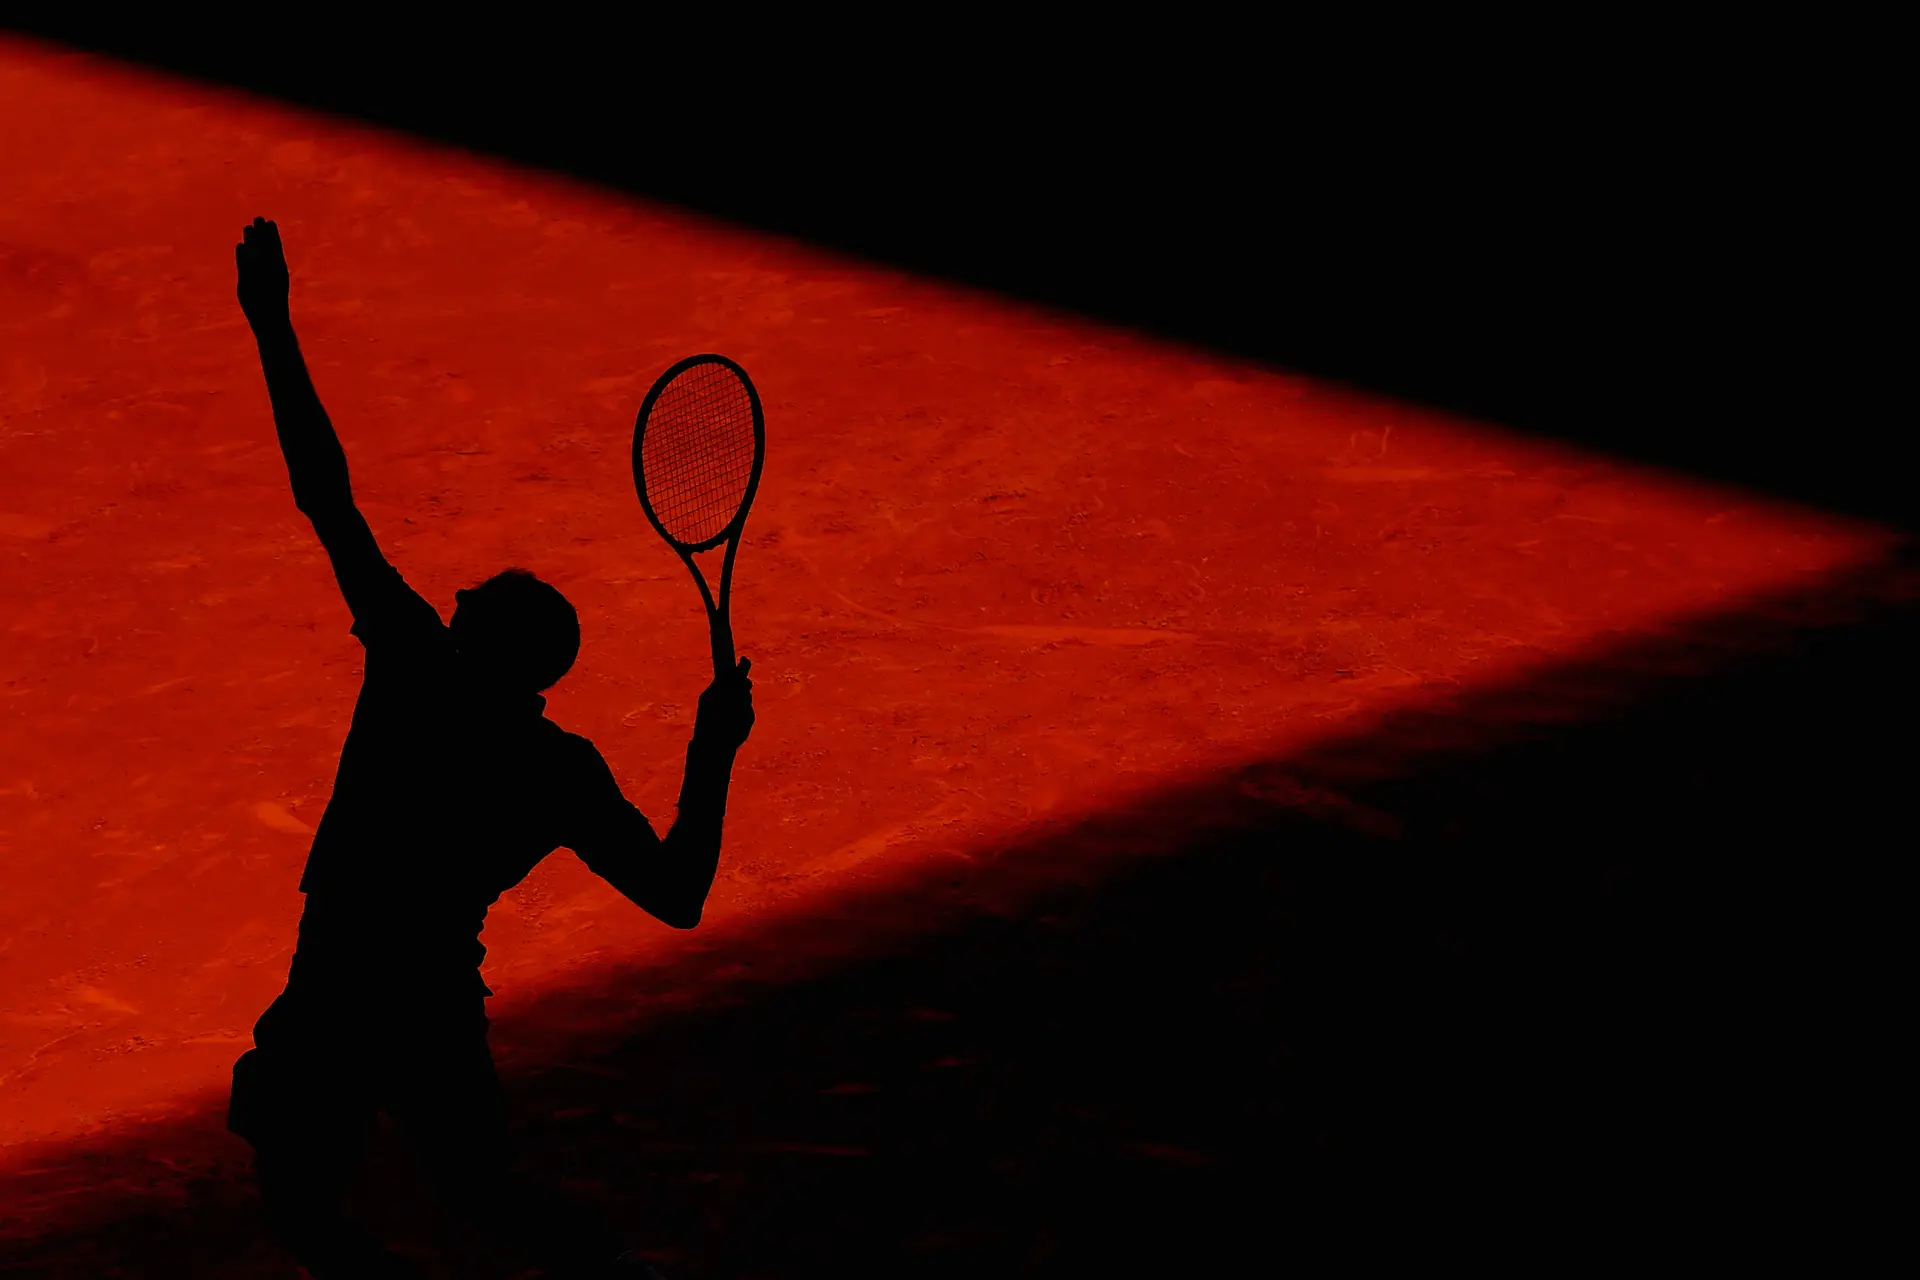 ATP anuncia mudanças no calendário do tênis e confirma torneios até fim de  2020, tênis